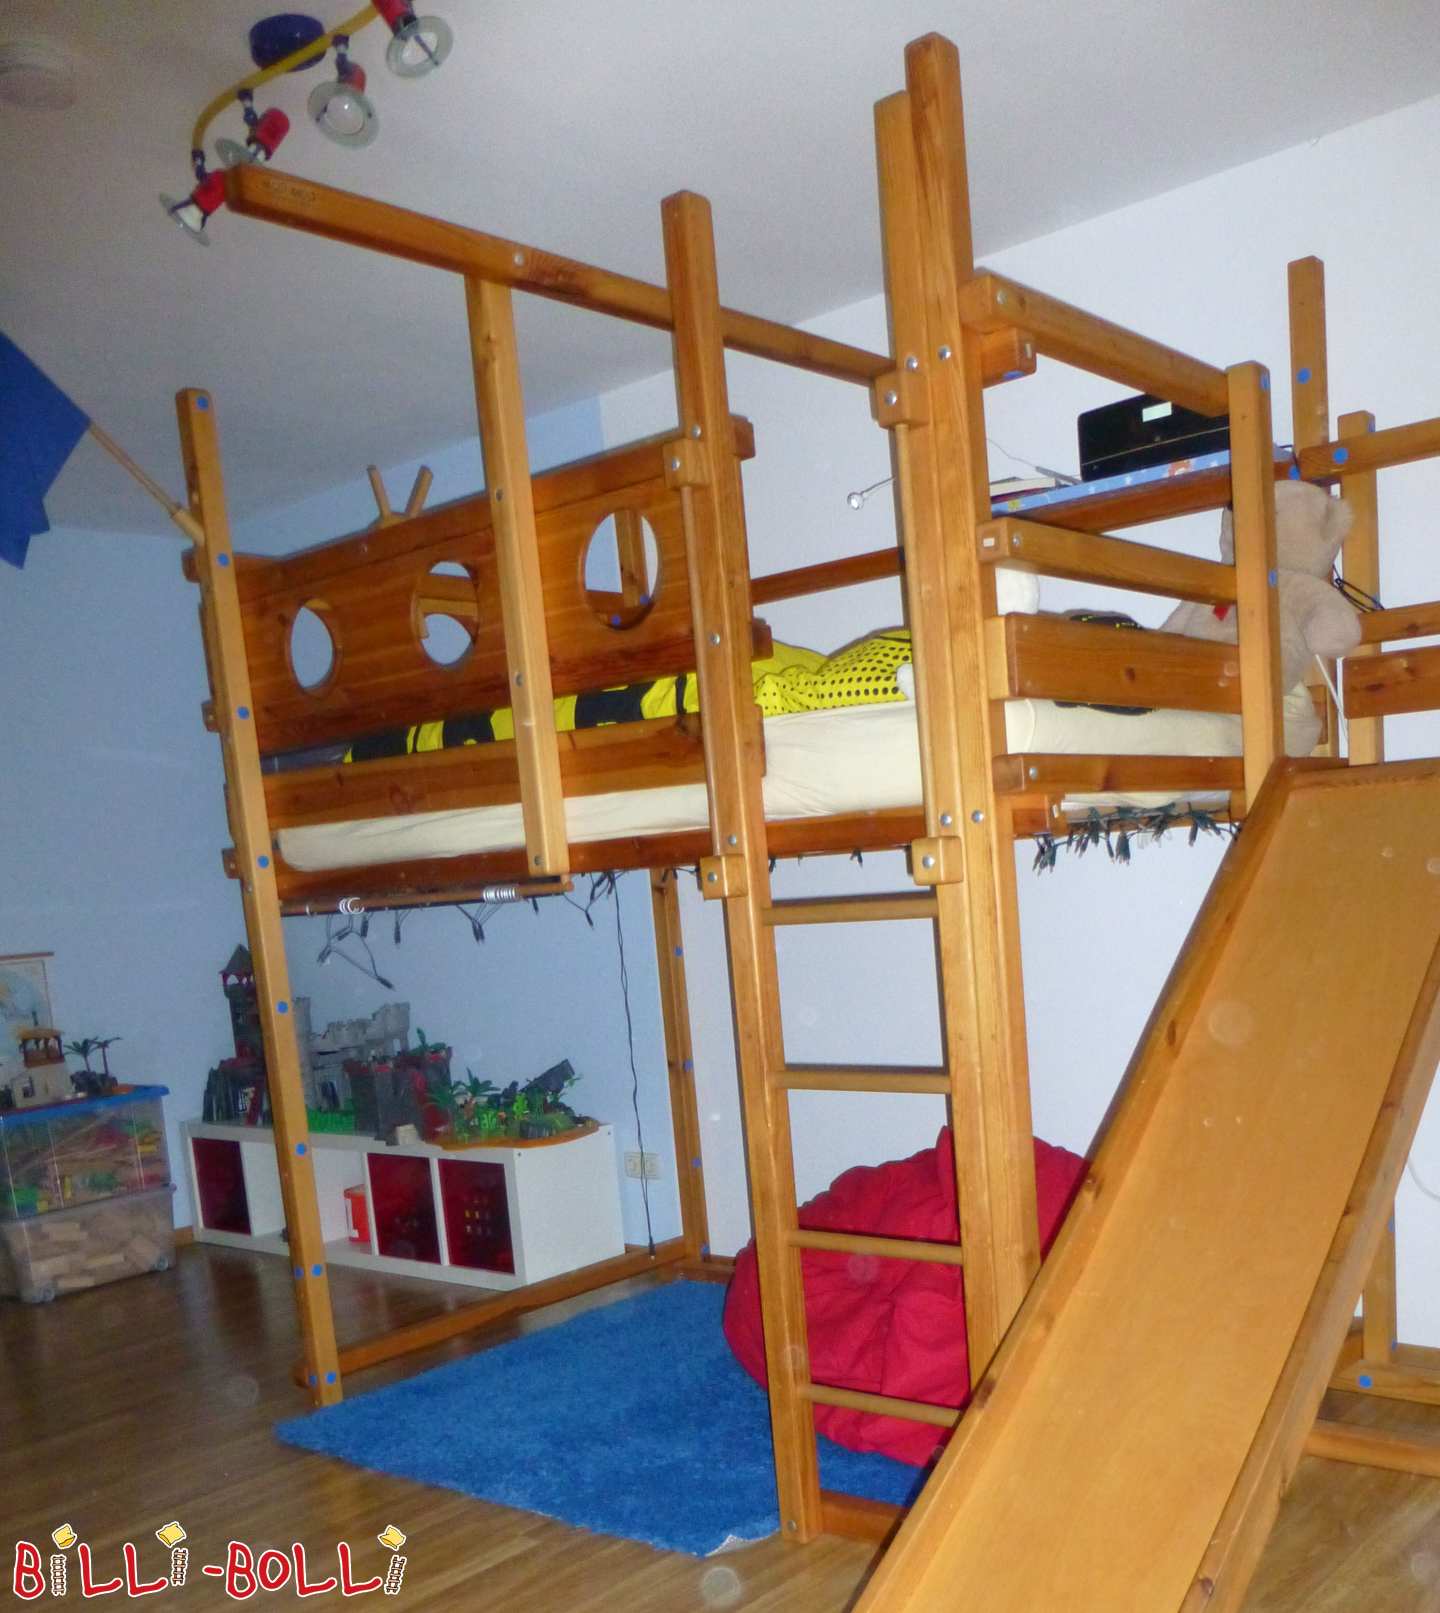 मचान बिस्तर 120x200 सेमी, ऊंचाई 228.5 सेमी फीट छात्र बिस्तर के साथ (श्रेणी: मचान बिस्तर जो बच्चे के साथ बढ़ता है प्रयुक्त)